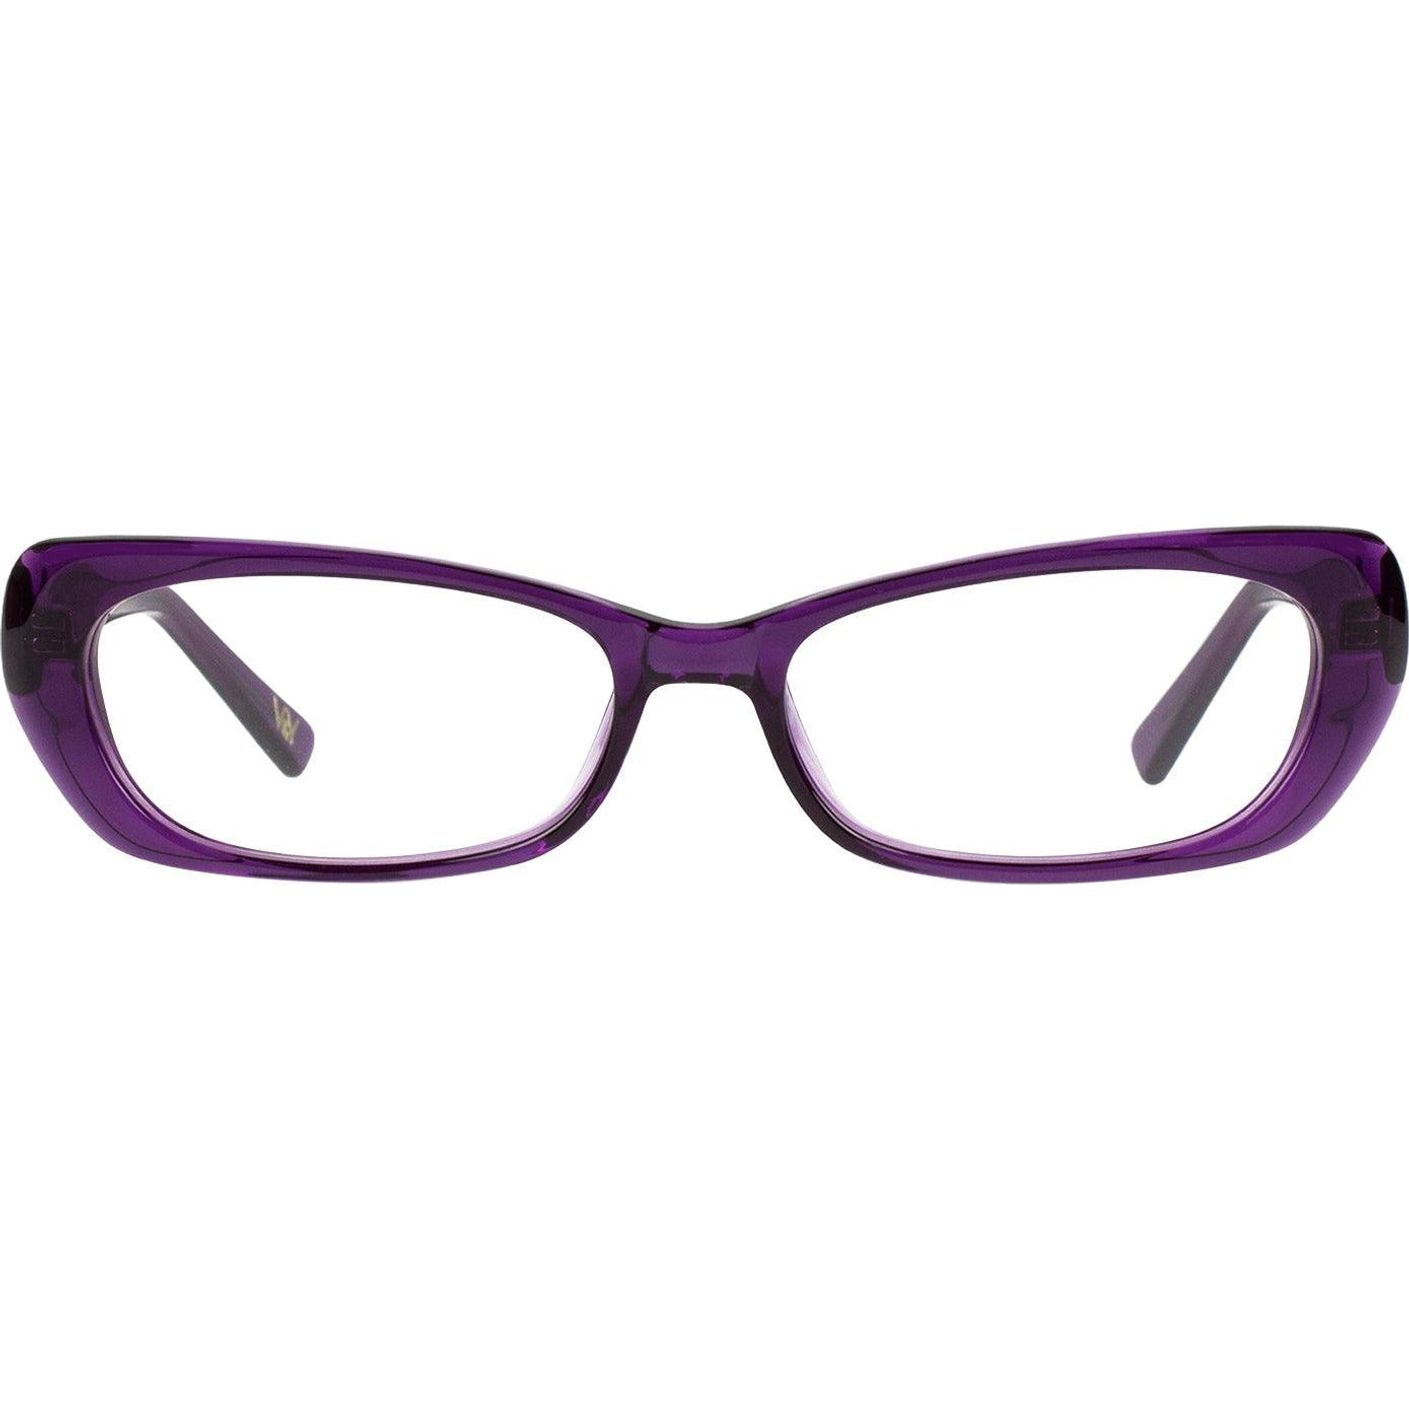 Chassis Rectangular Frame in Fancy Purple for Women Eyeglasses High End Designer Prescription Glasses Blue Light - Vint & York